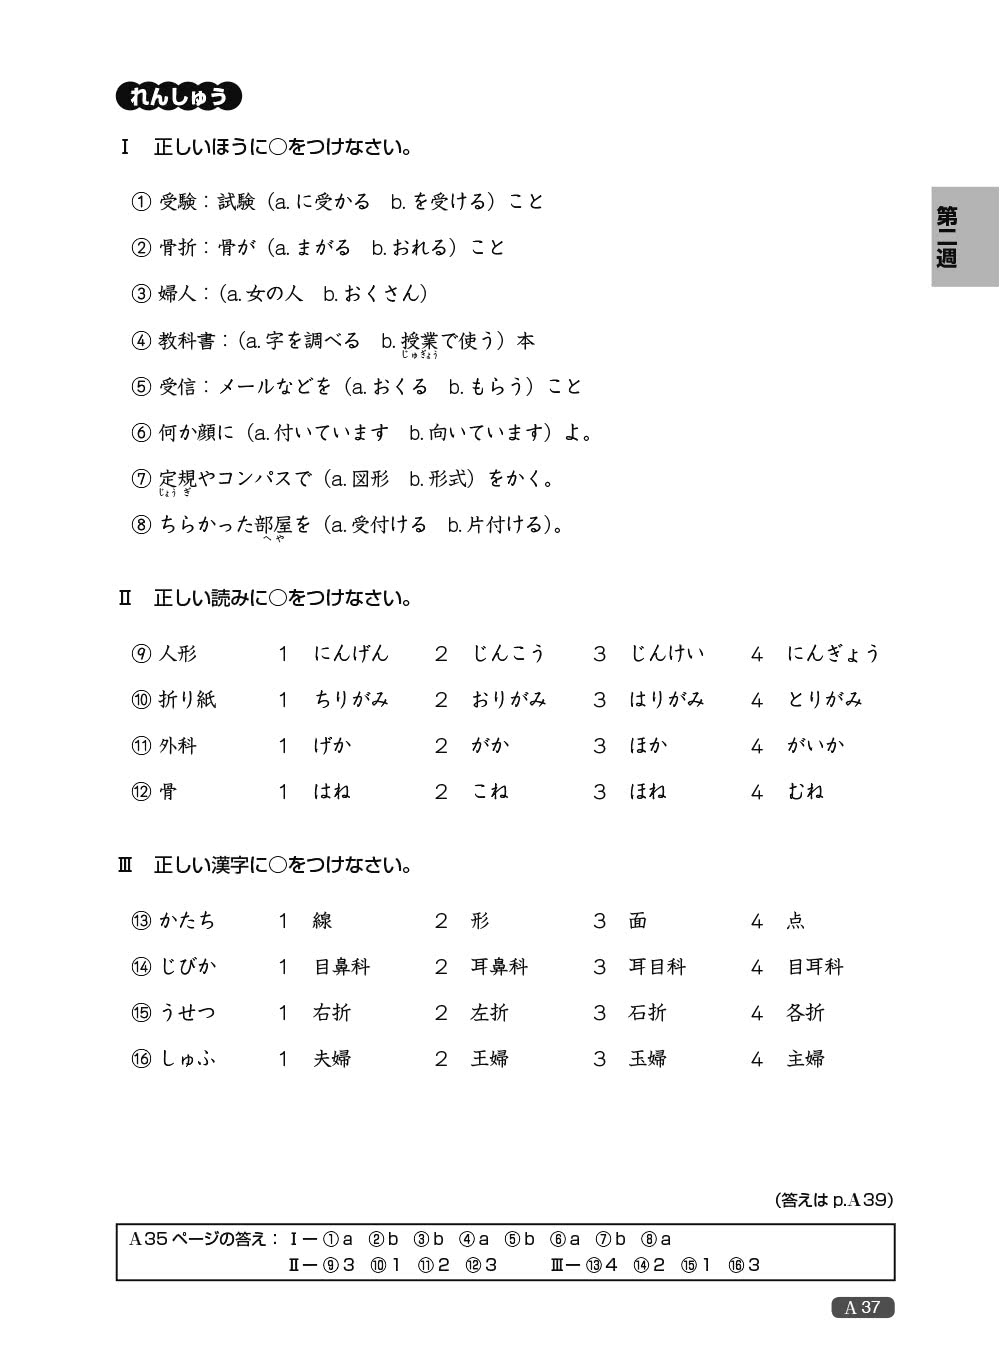 新日檢完勝對策N3：漢字•語彙